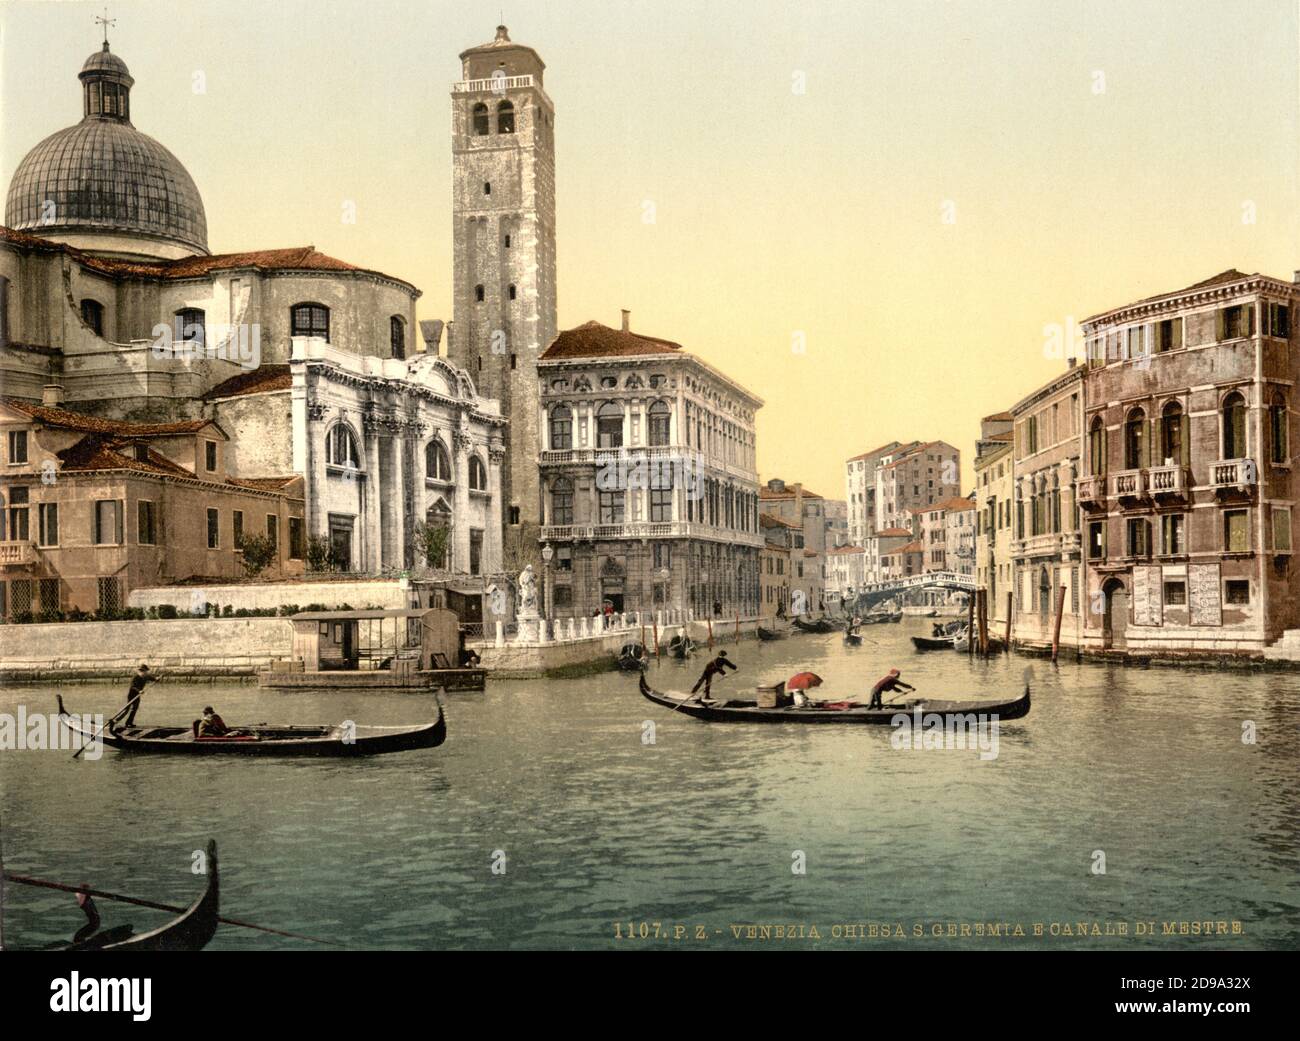 1895 ca. , VENEZIA ,  ITALY : The  CHIESA DI SAN GEREMIA and Canale di Mestre  . Photocrom print colors edited by Detroit Publishing Co.  -  VENICE - VENETO -  ITALIA - FOTO STORICHE - HISTORY - GEOGRAFIA - GEOGRAPHY  - ARCHITETTURA - ARCHITECTURE  -    -  ARTS - ARTE - canal - gondola - gondole - CHURCH St GEREMY   ----  Archivio GBB Stock Photo